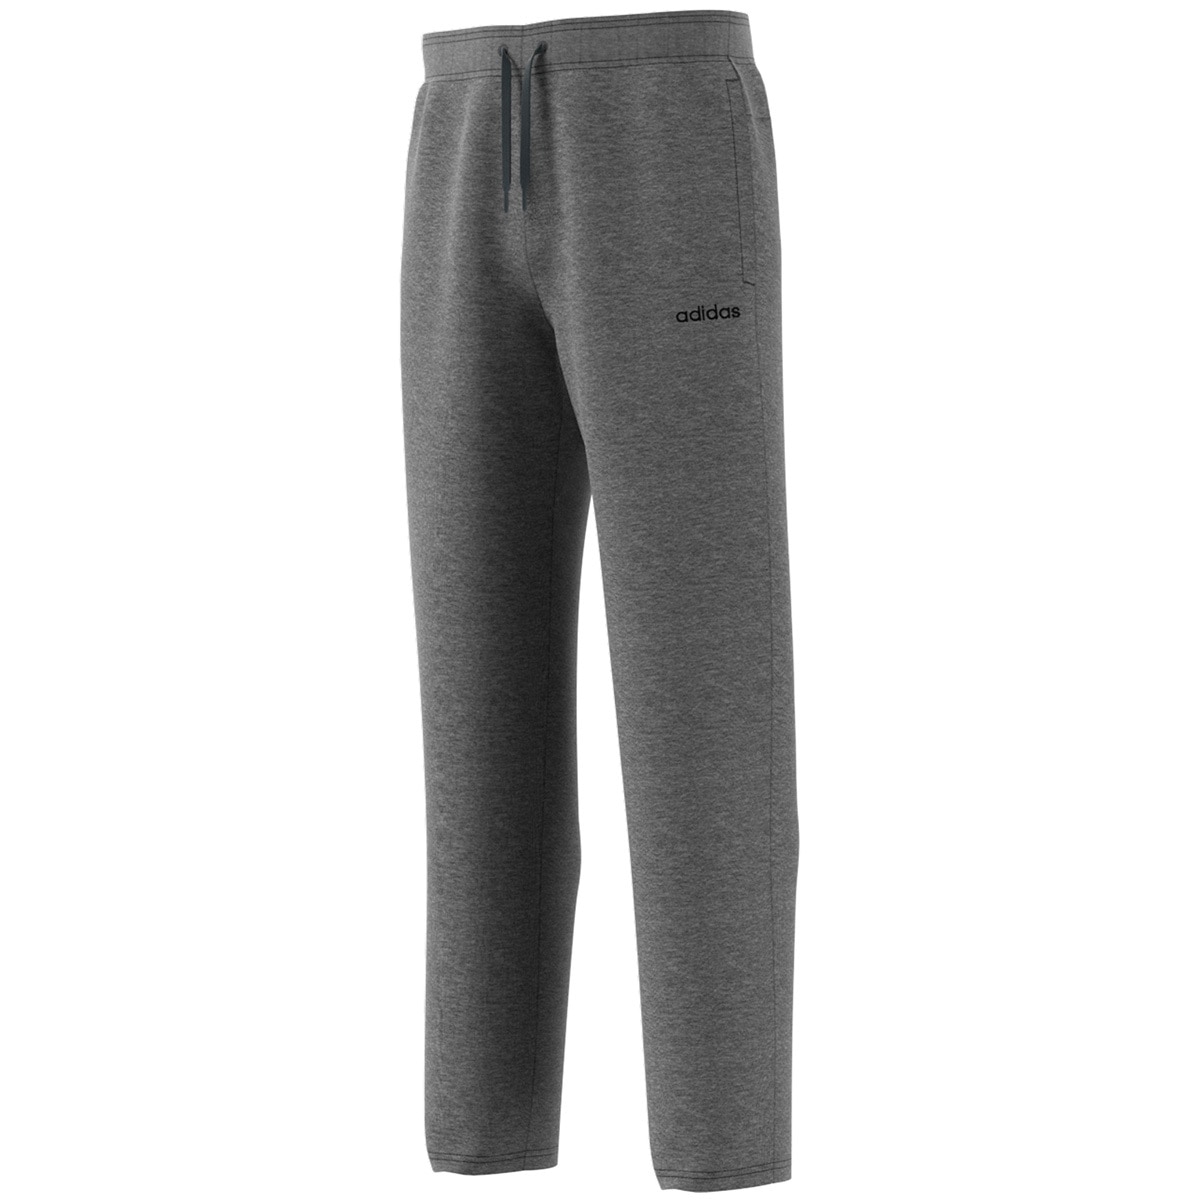 Adidas Men's Fleece Pants - Dark Grey